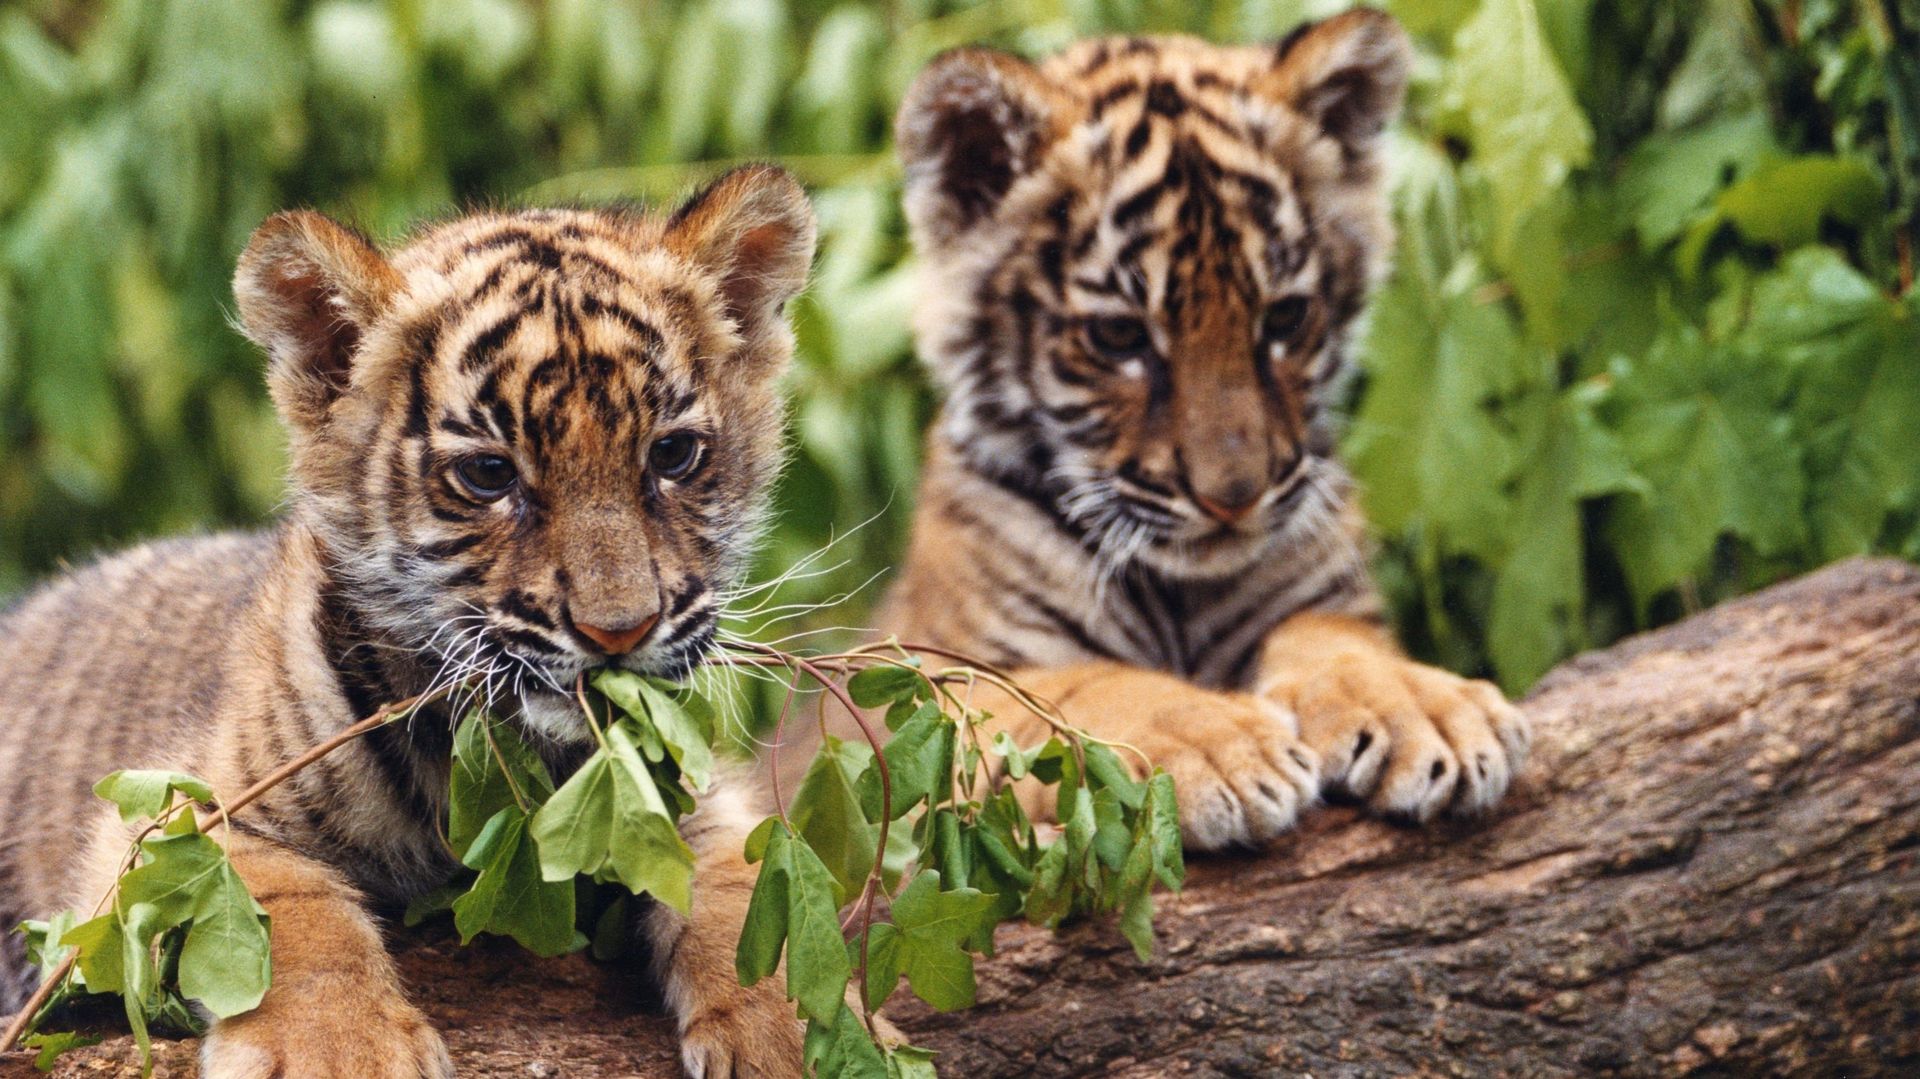 "Deux frères": Comment se passe un tournage avec des bébés tigres ?